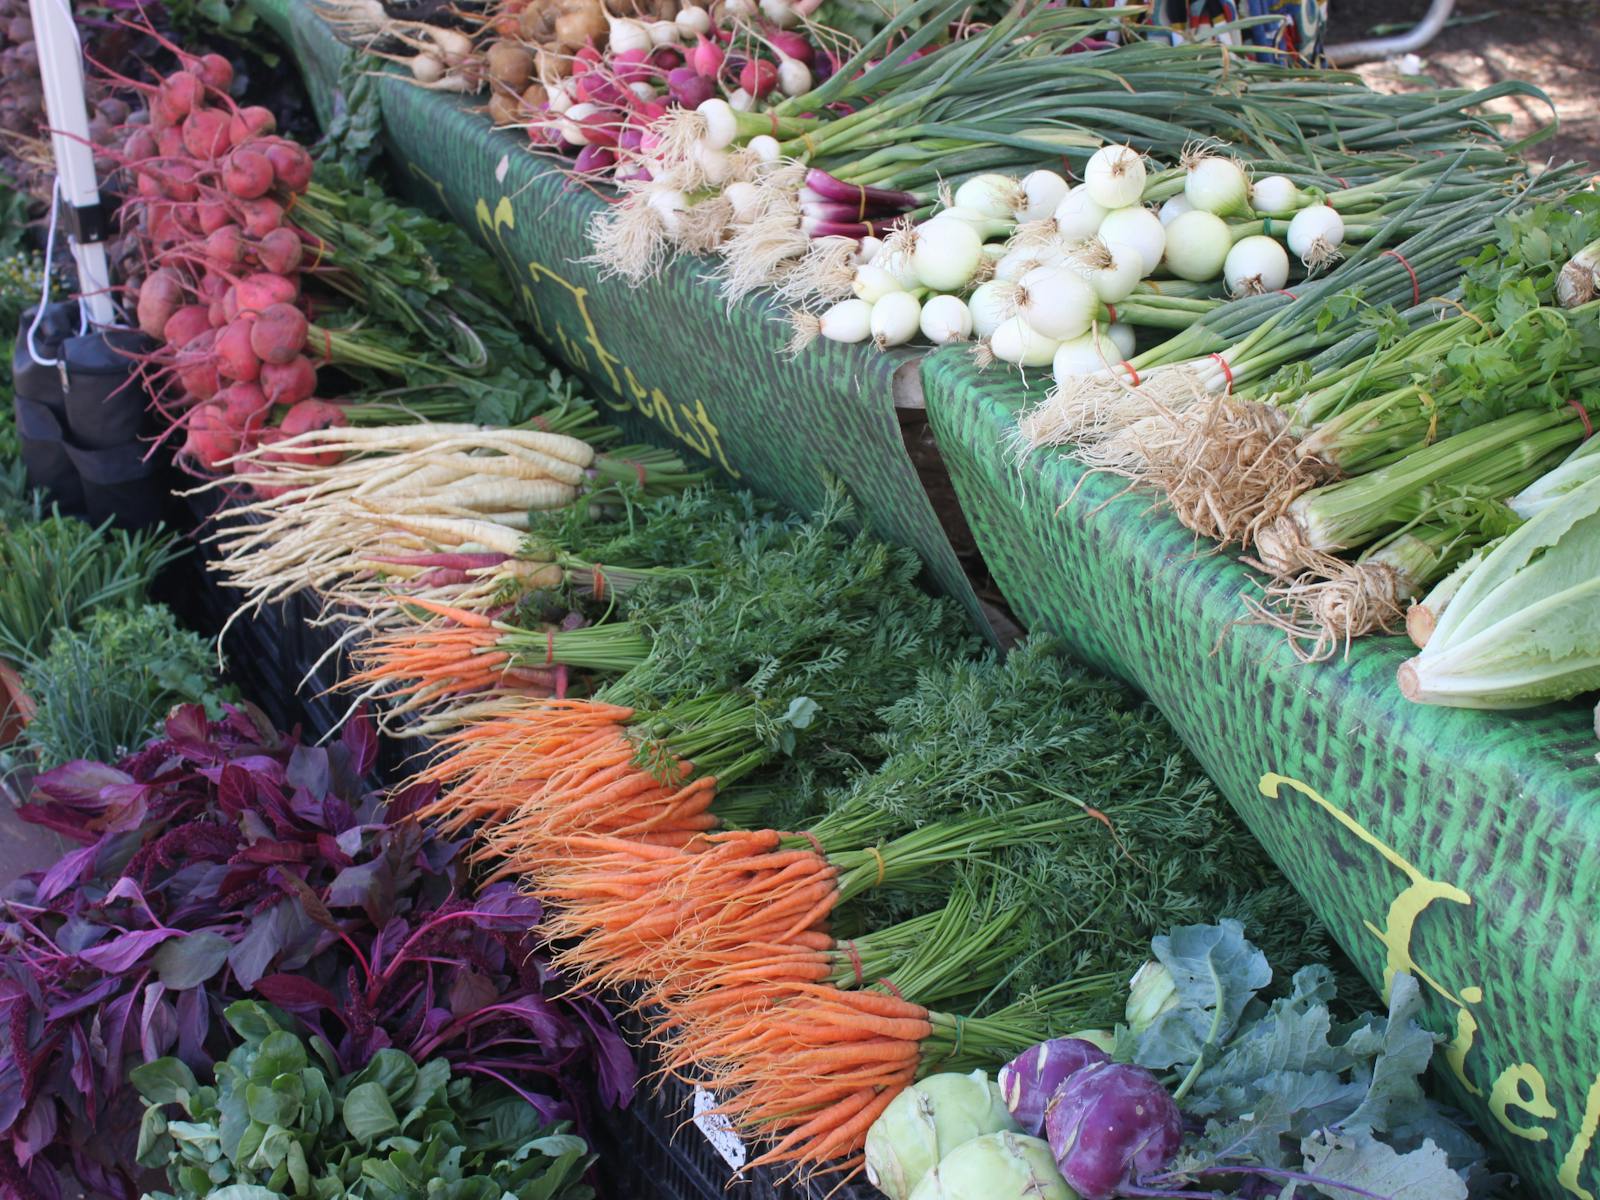 Image for Bondi Farmers Market